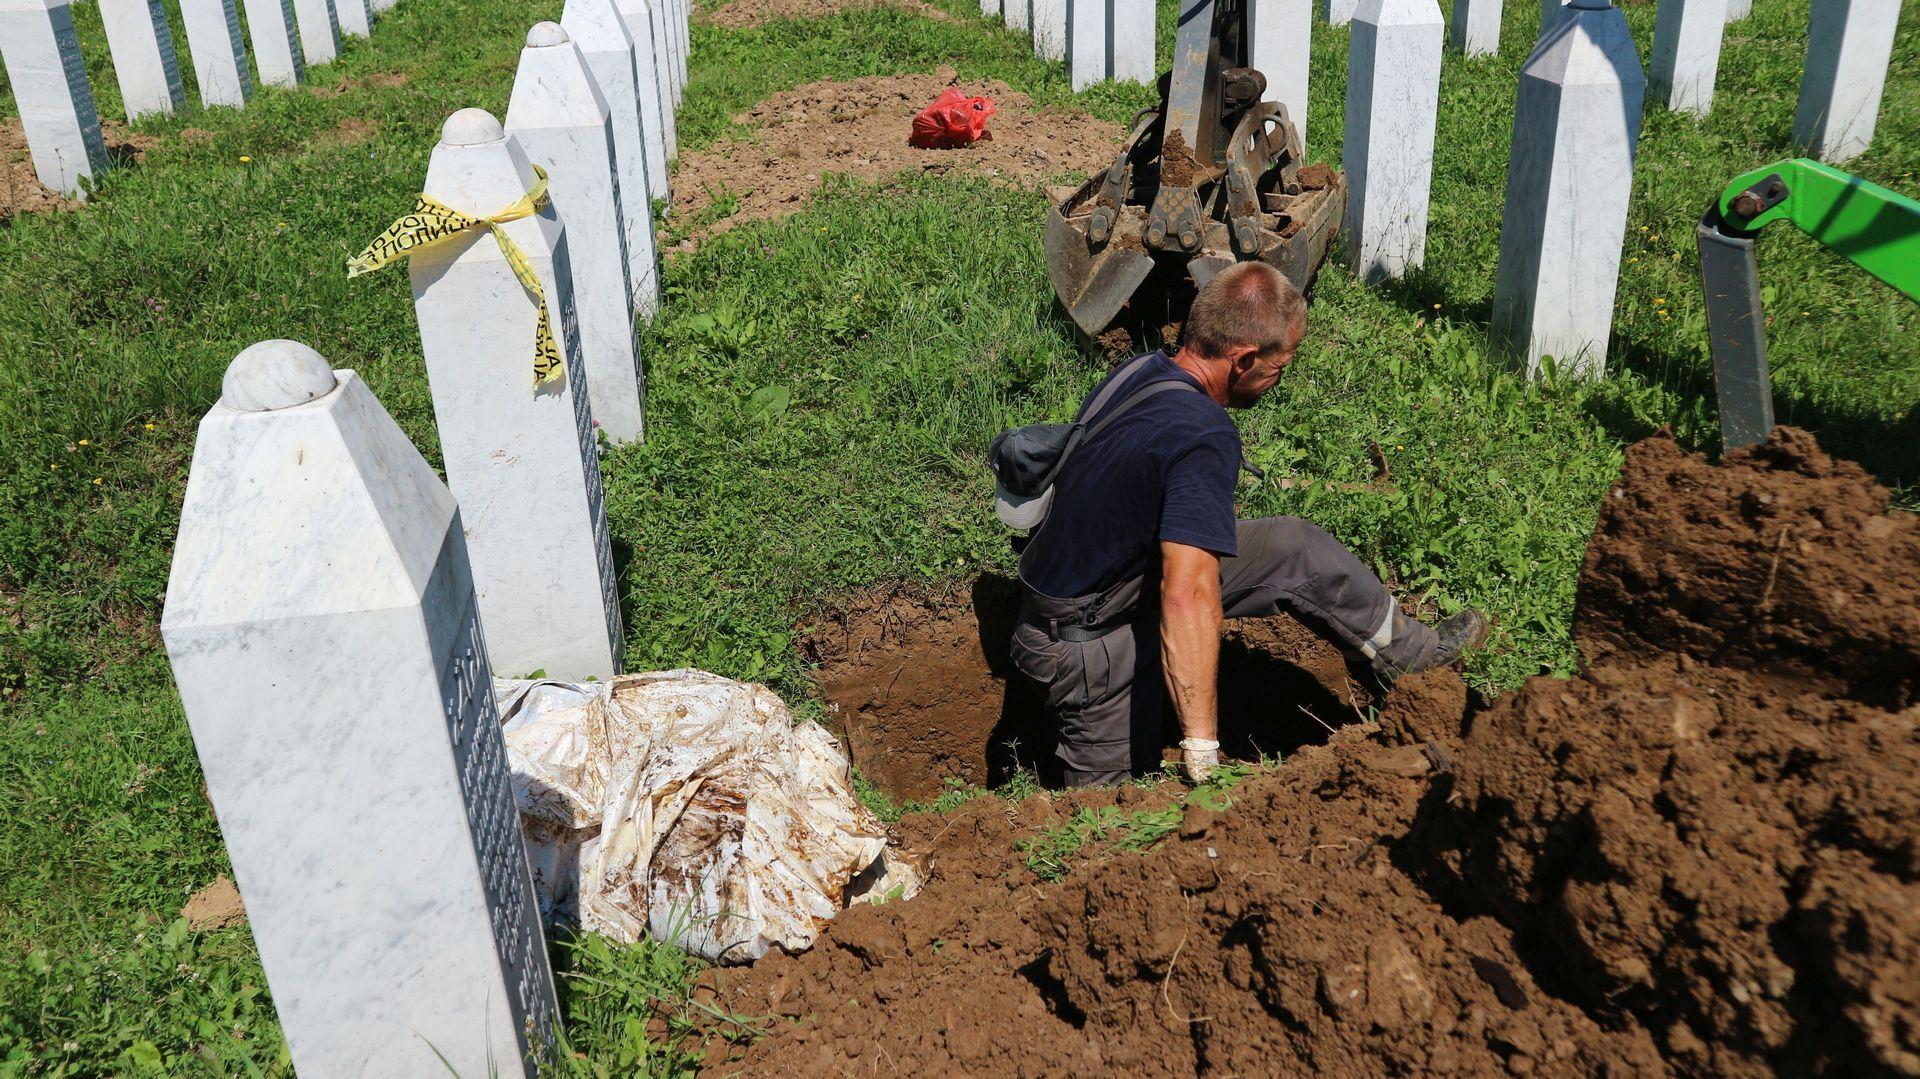 Reekshumacije obavljene uz saglasnost i prisustvo porodica žrtava - Avaz